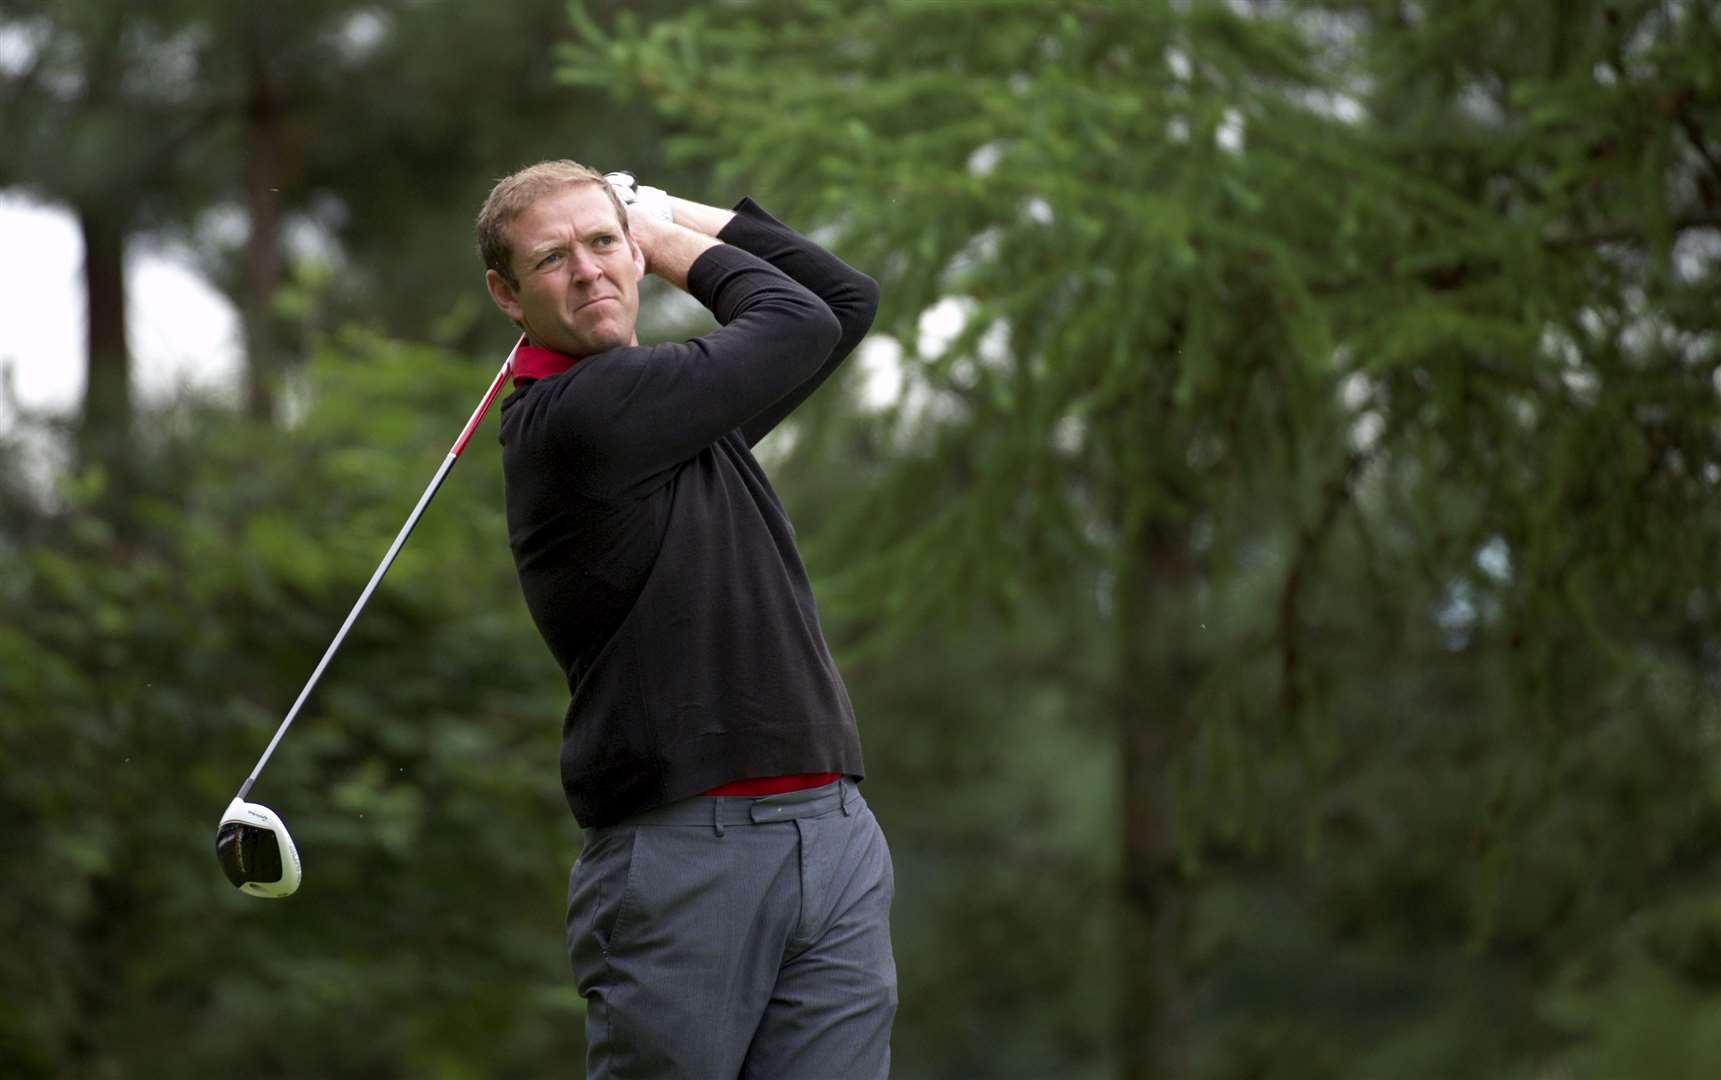 Joel claims victory at Moray Golf Club